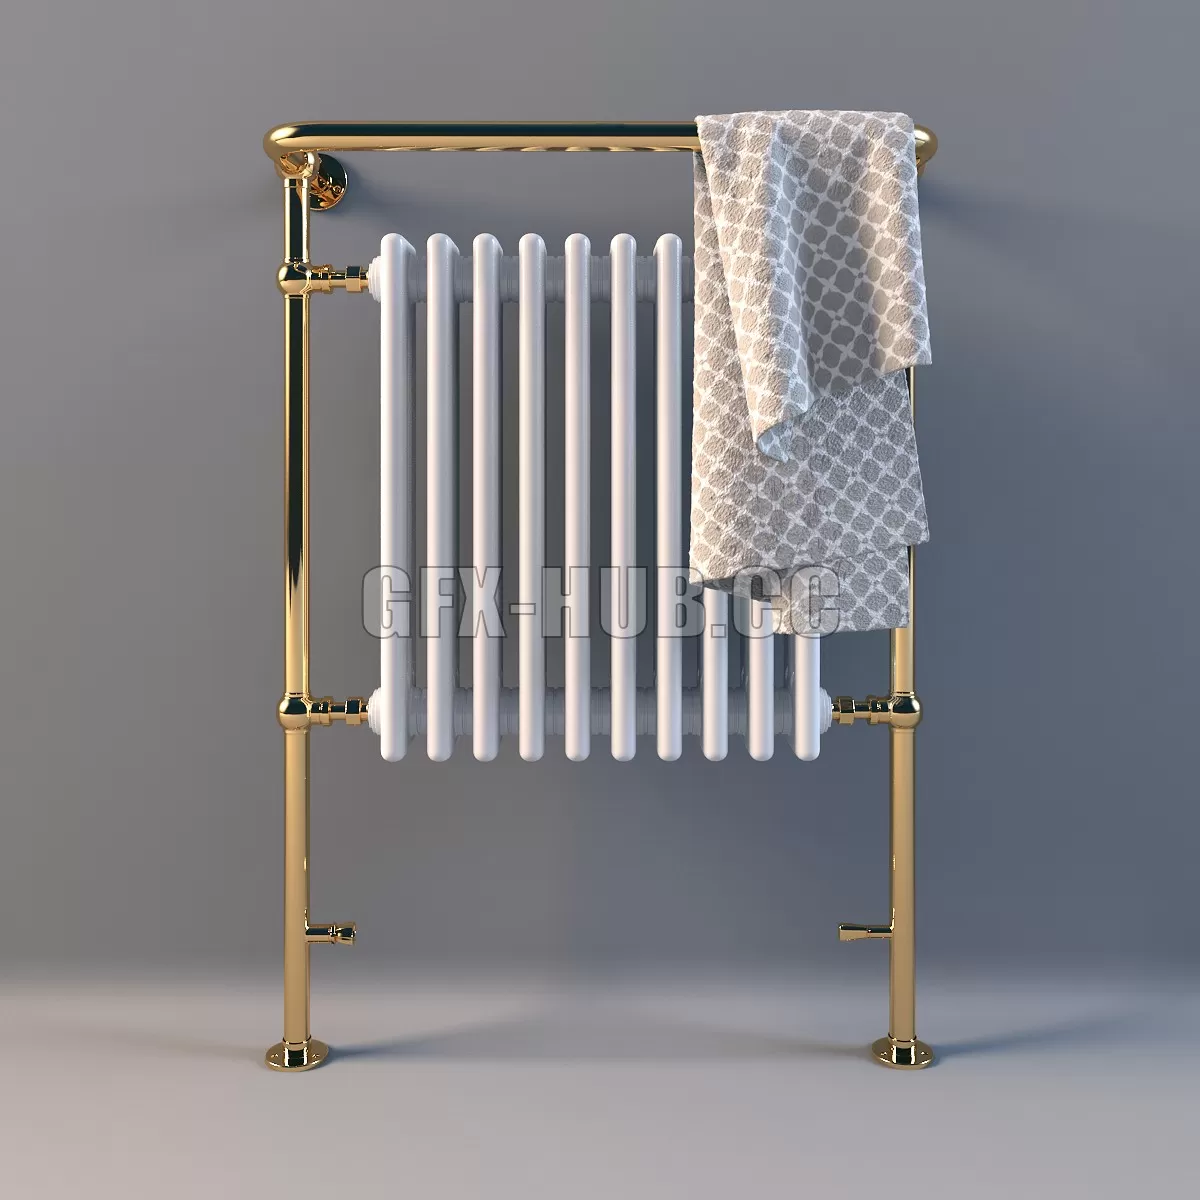 DOOR – Heated towel outdoor LineaTre